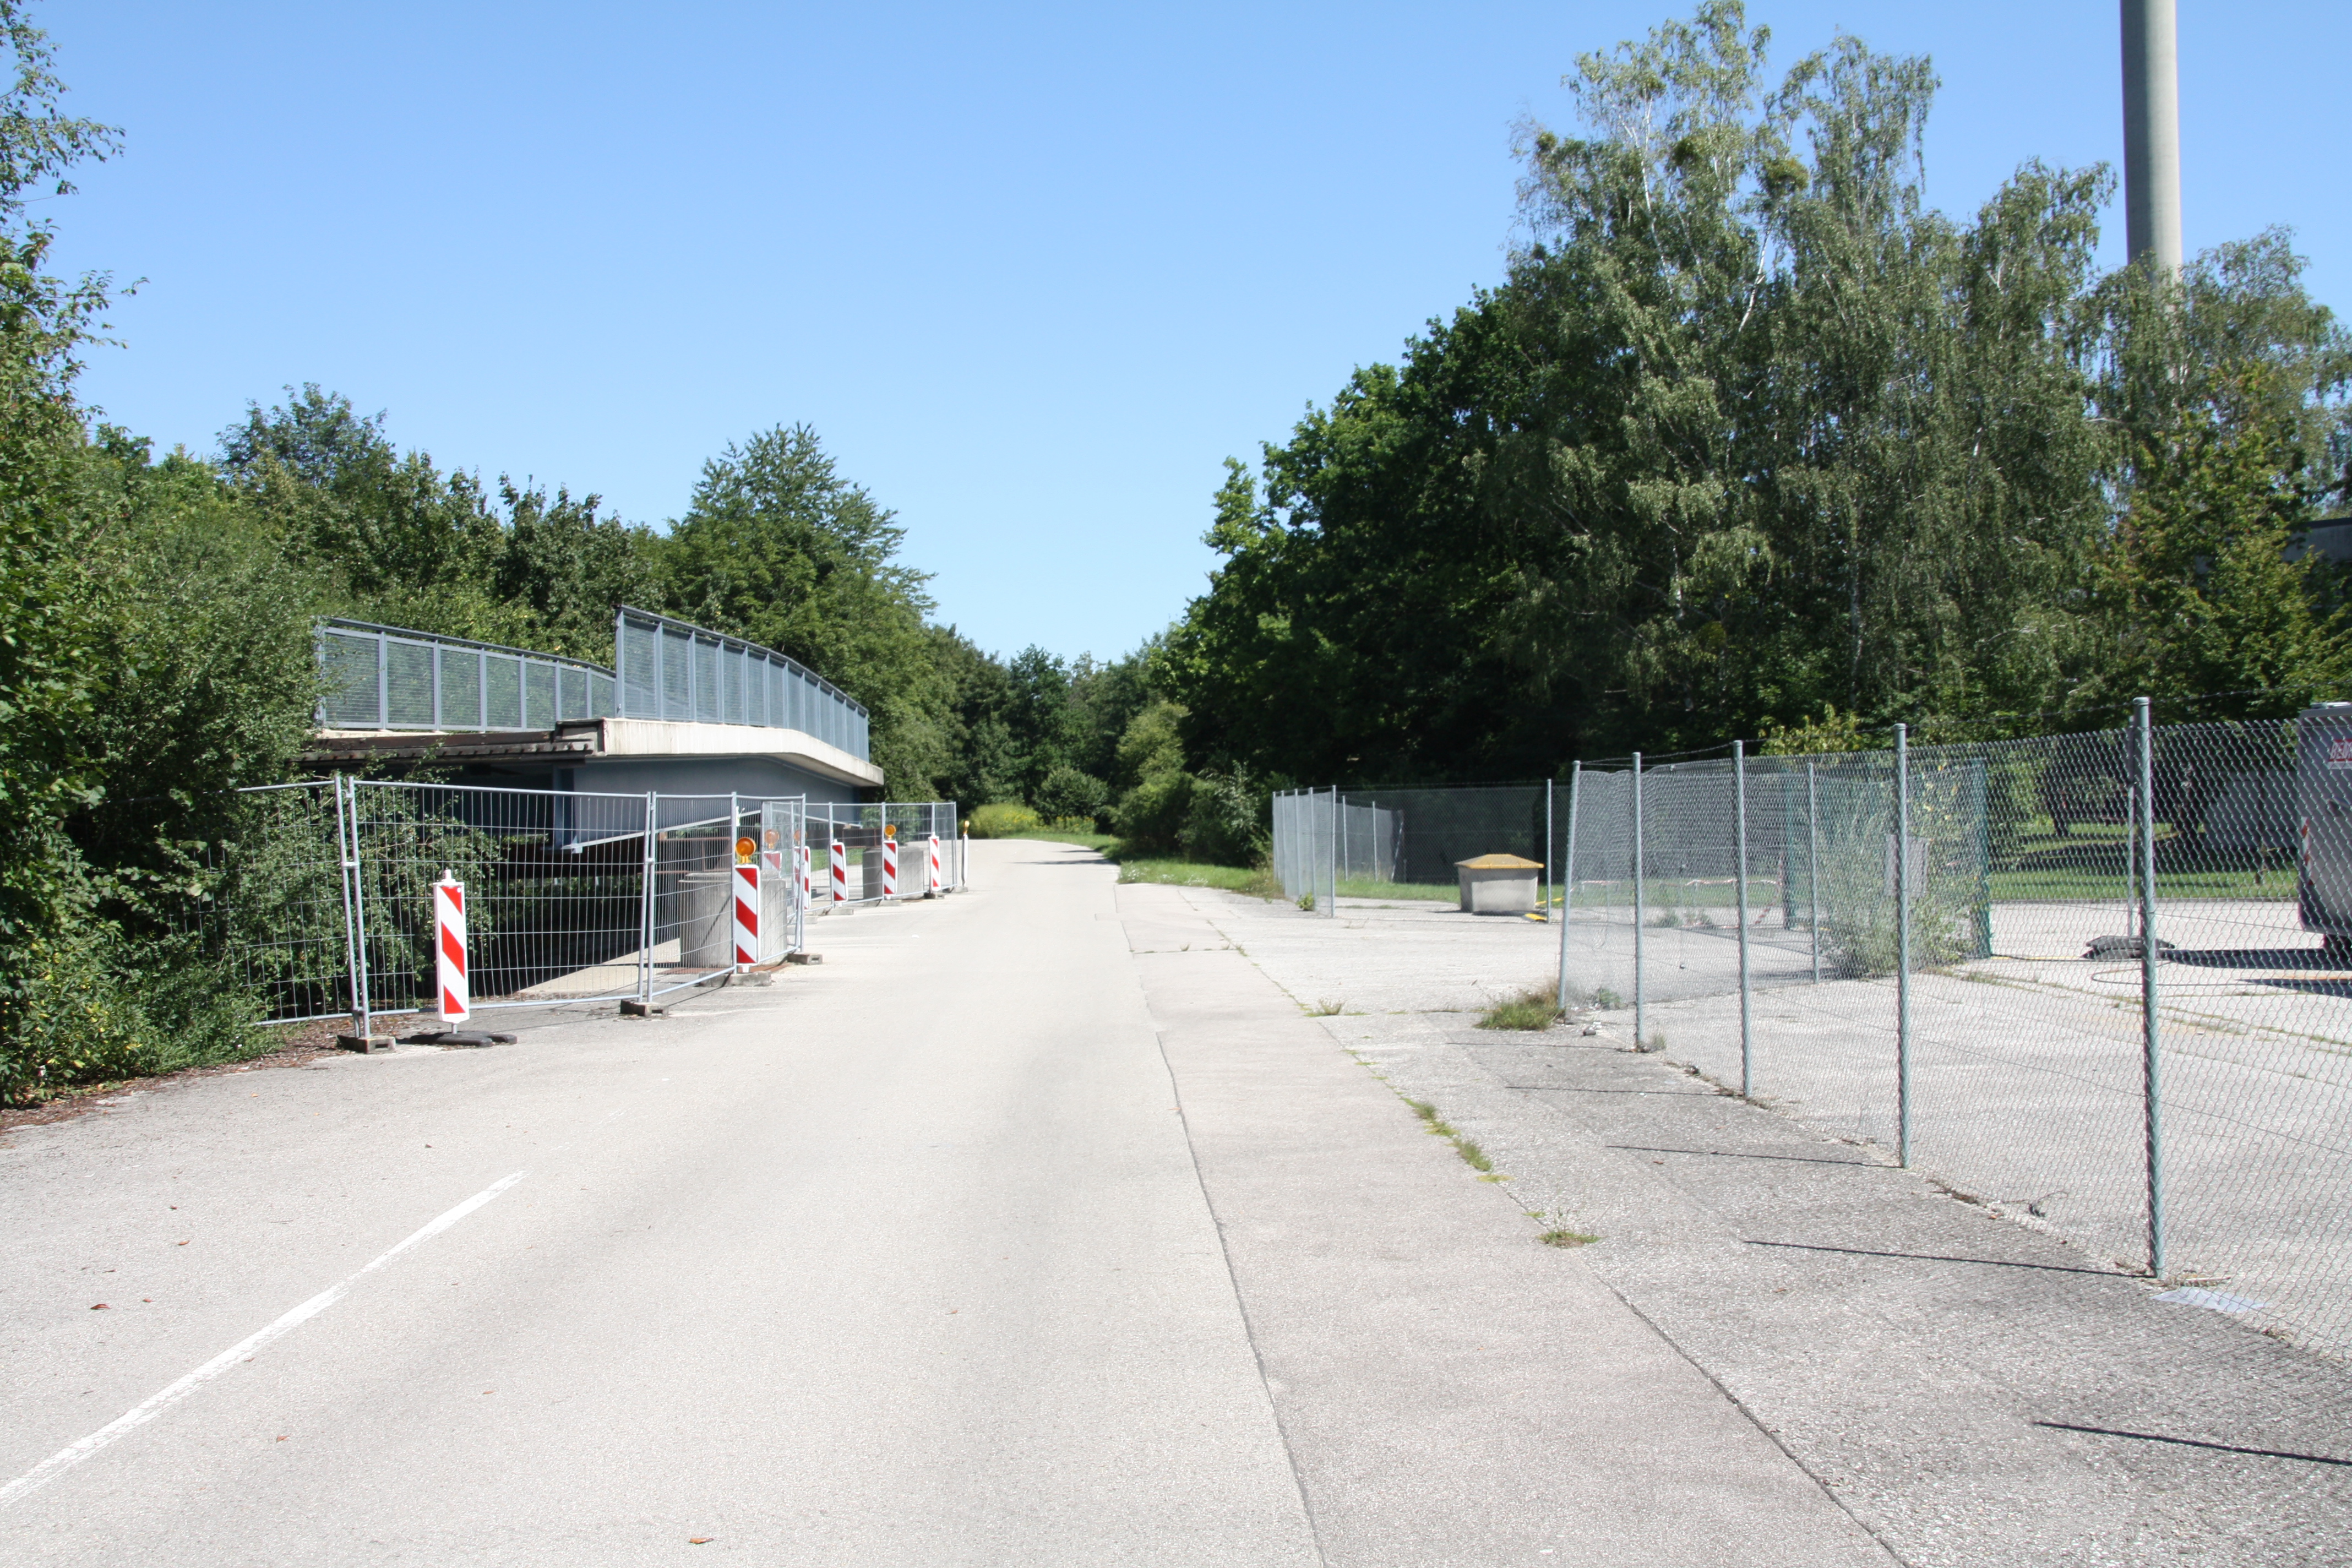 Nördlich von Neuherberg zweigt die Trasse nach Osten ab und verläuft entlang der alten, mittlerweile autofreien B13.